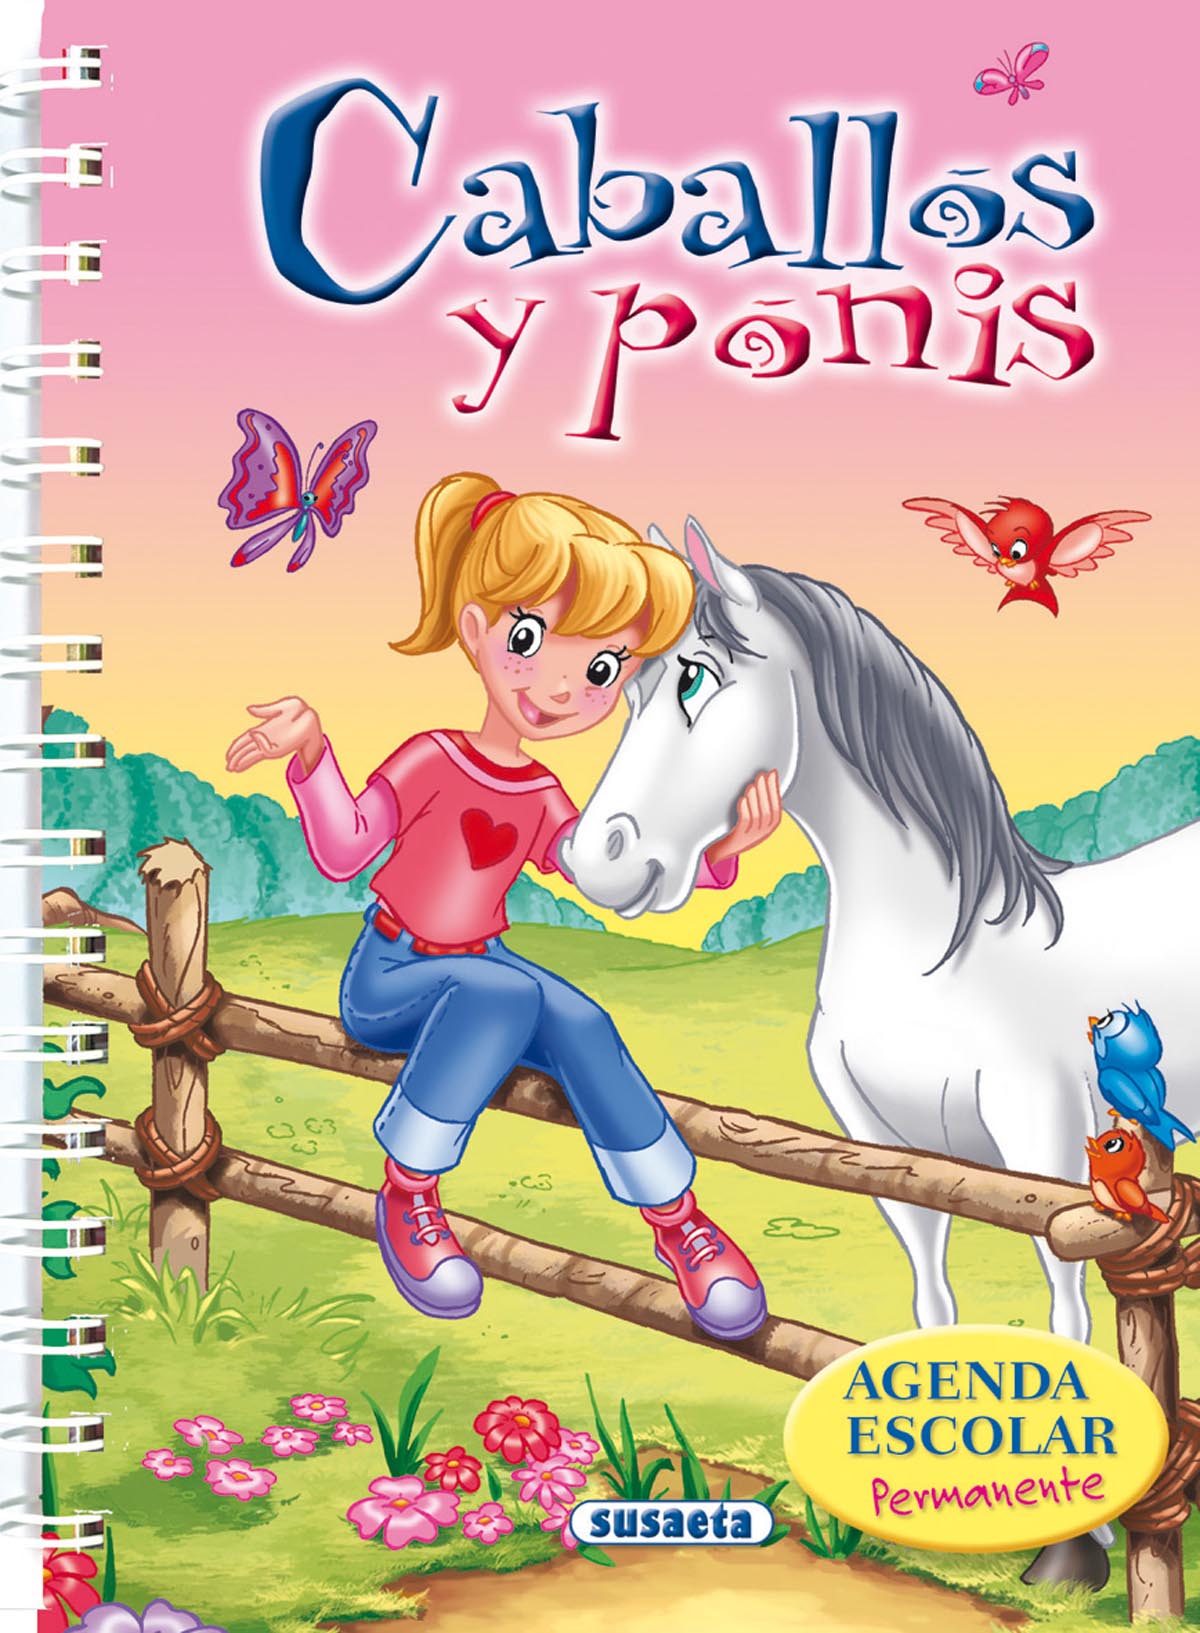 Agenda escolar permanente - Caballos y ponis